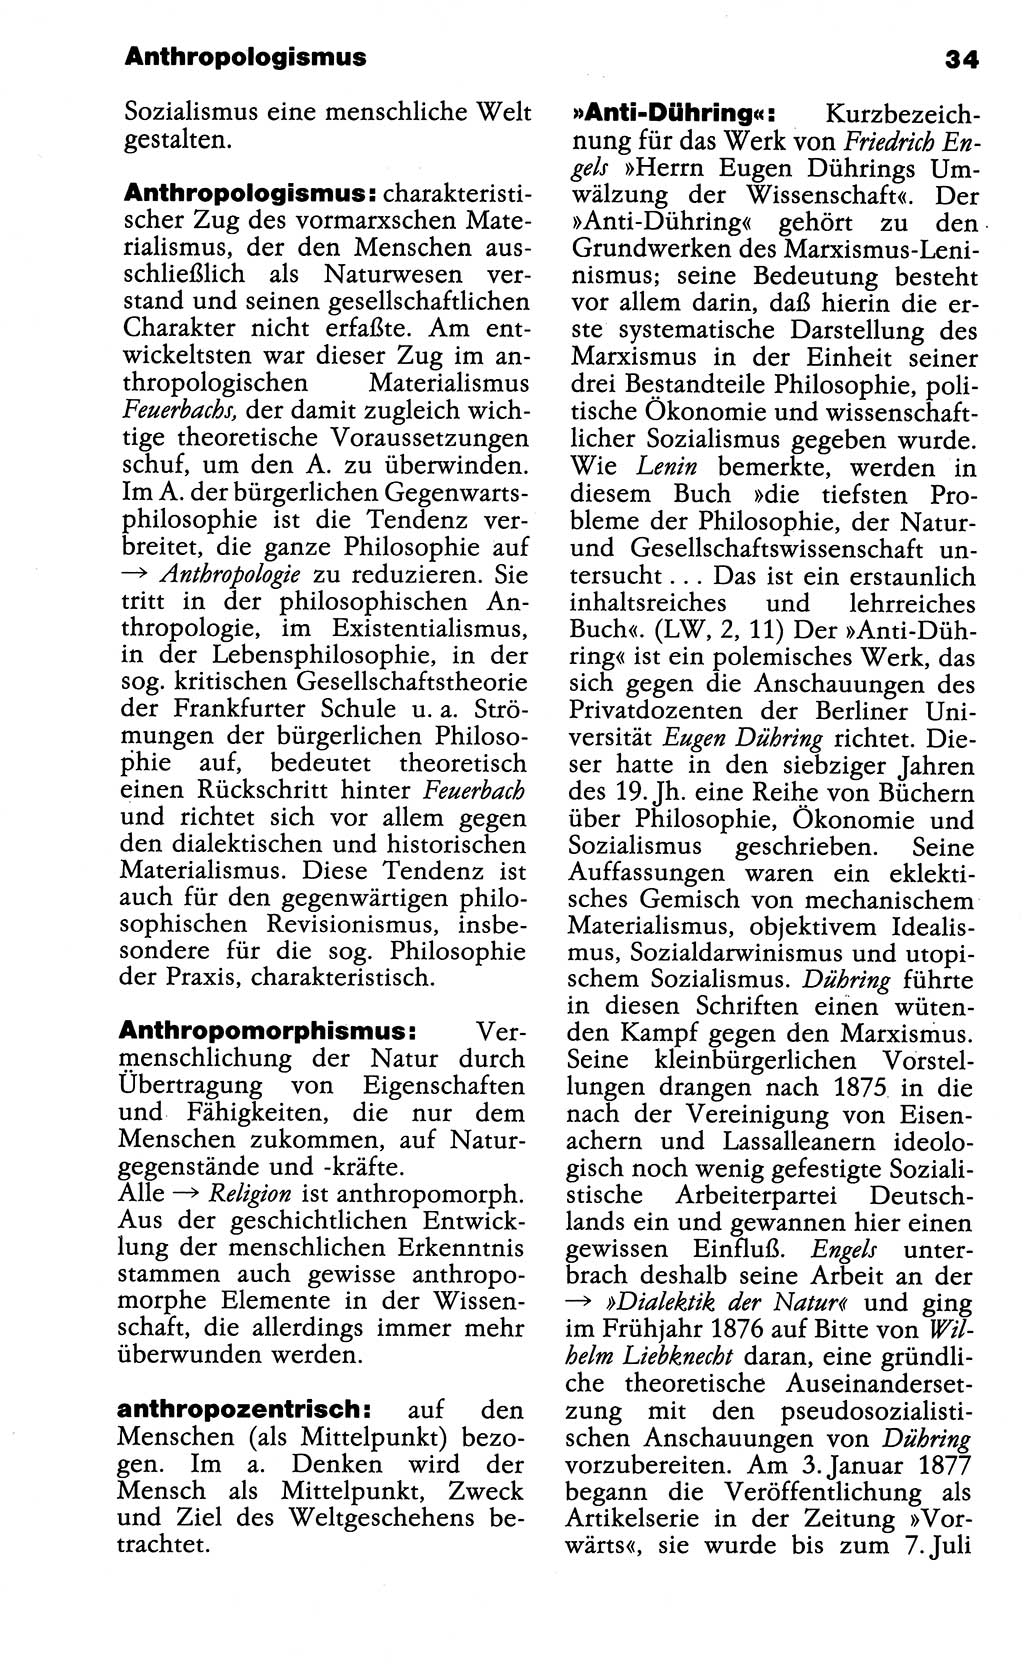 Wörterbuch der marxistisch-leninistischen Philosophie [Deutsche Demokratische Republik (DDR)] 1985, Seite 34 (Wb. ML Phil. DDR 1985, S. 34)